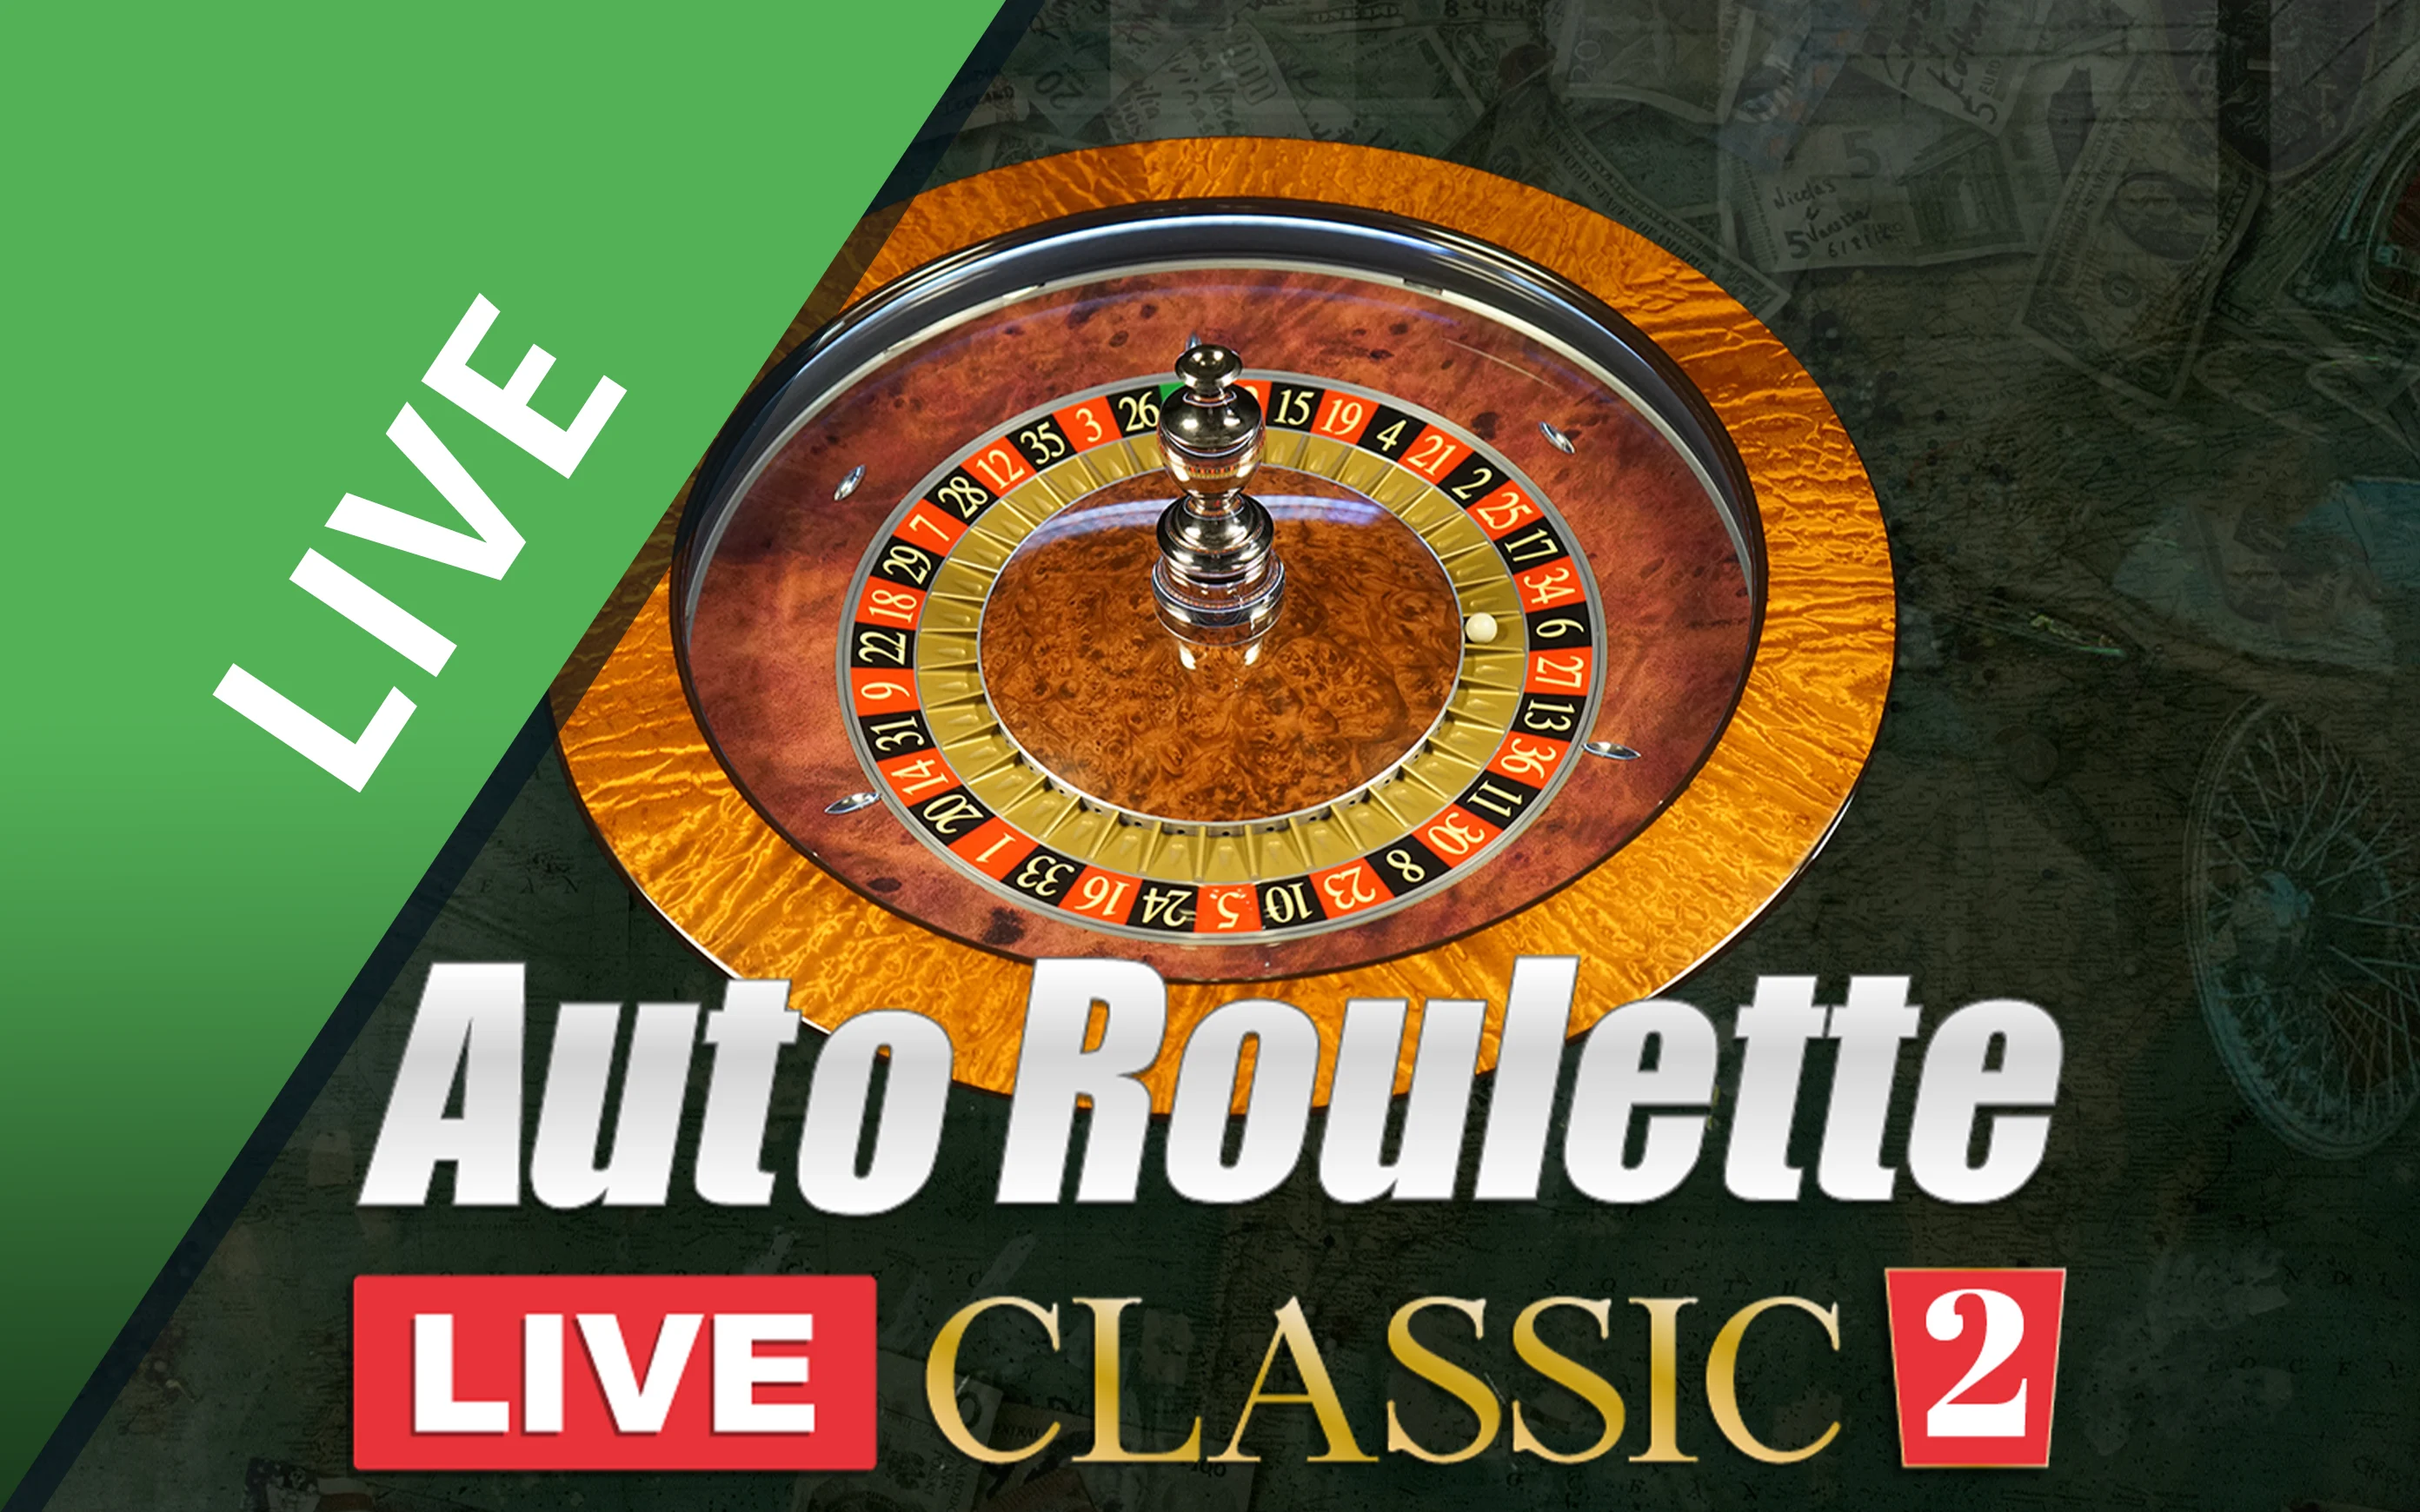 Juega a Classic Roulette 2 en el casino en línea de Starcasino.be